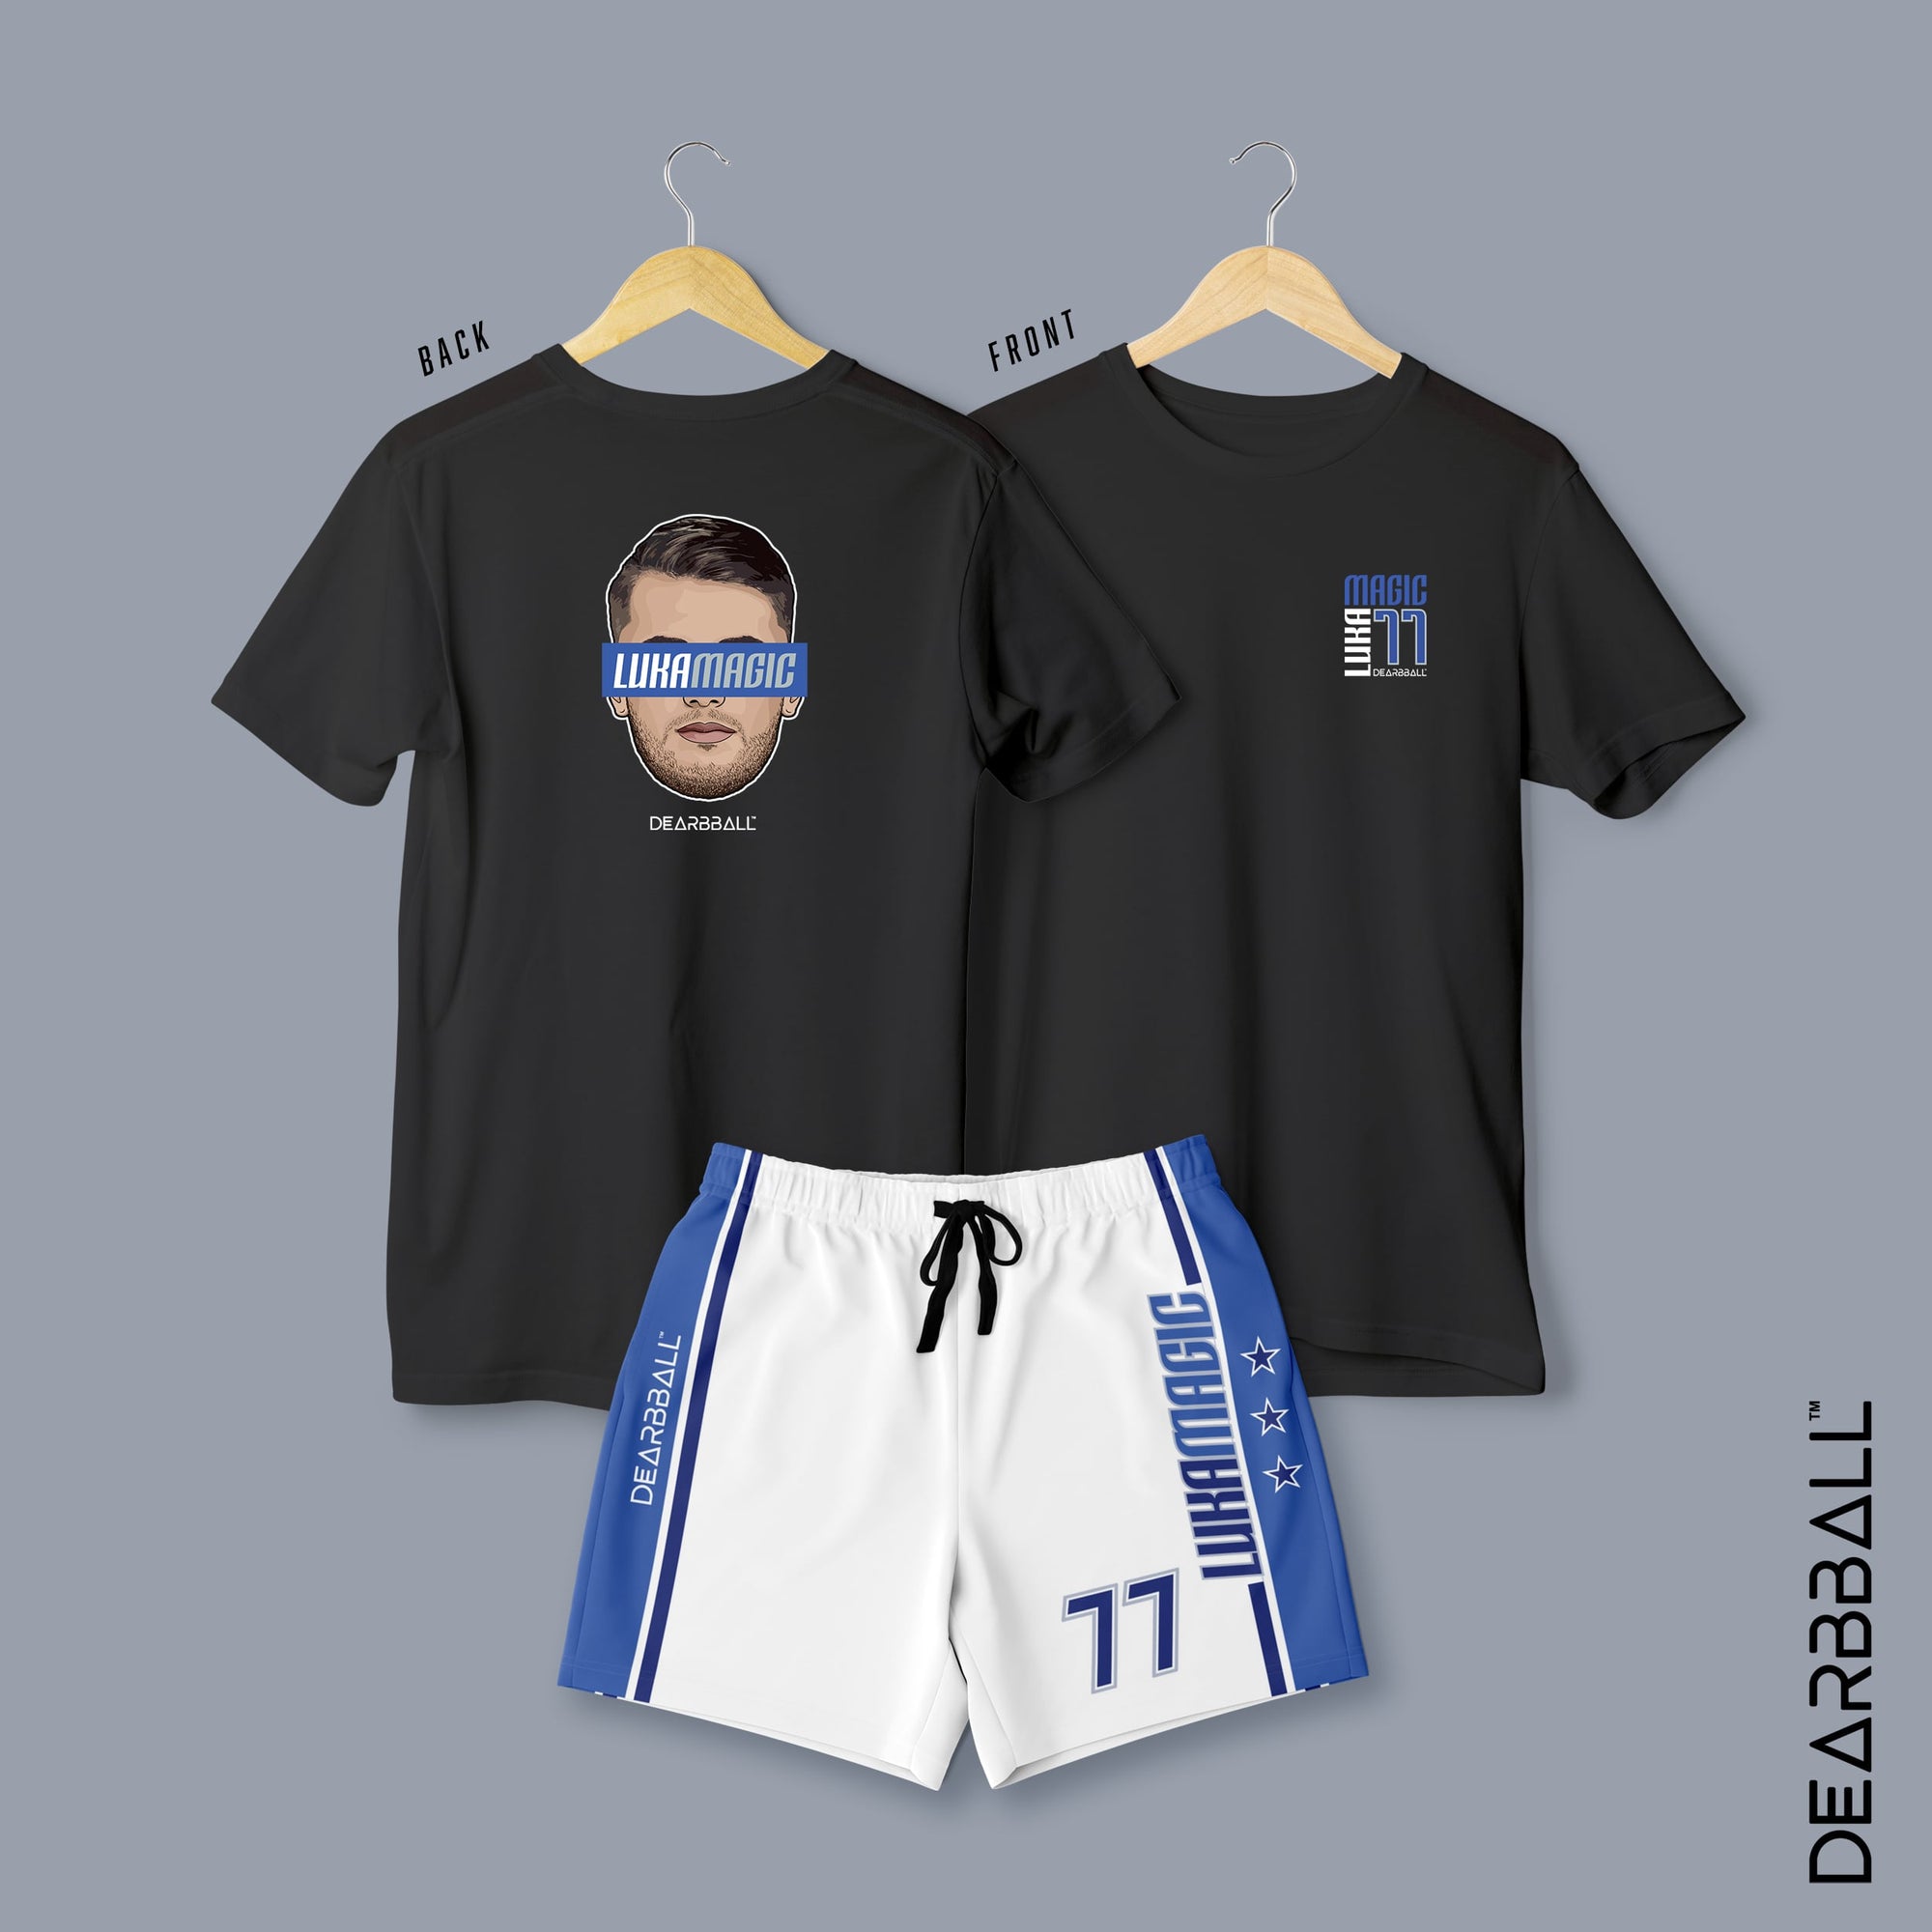 DearBBall Short T-Shirt Set - LukaMagic Finals Premium Edition